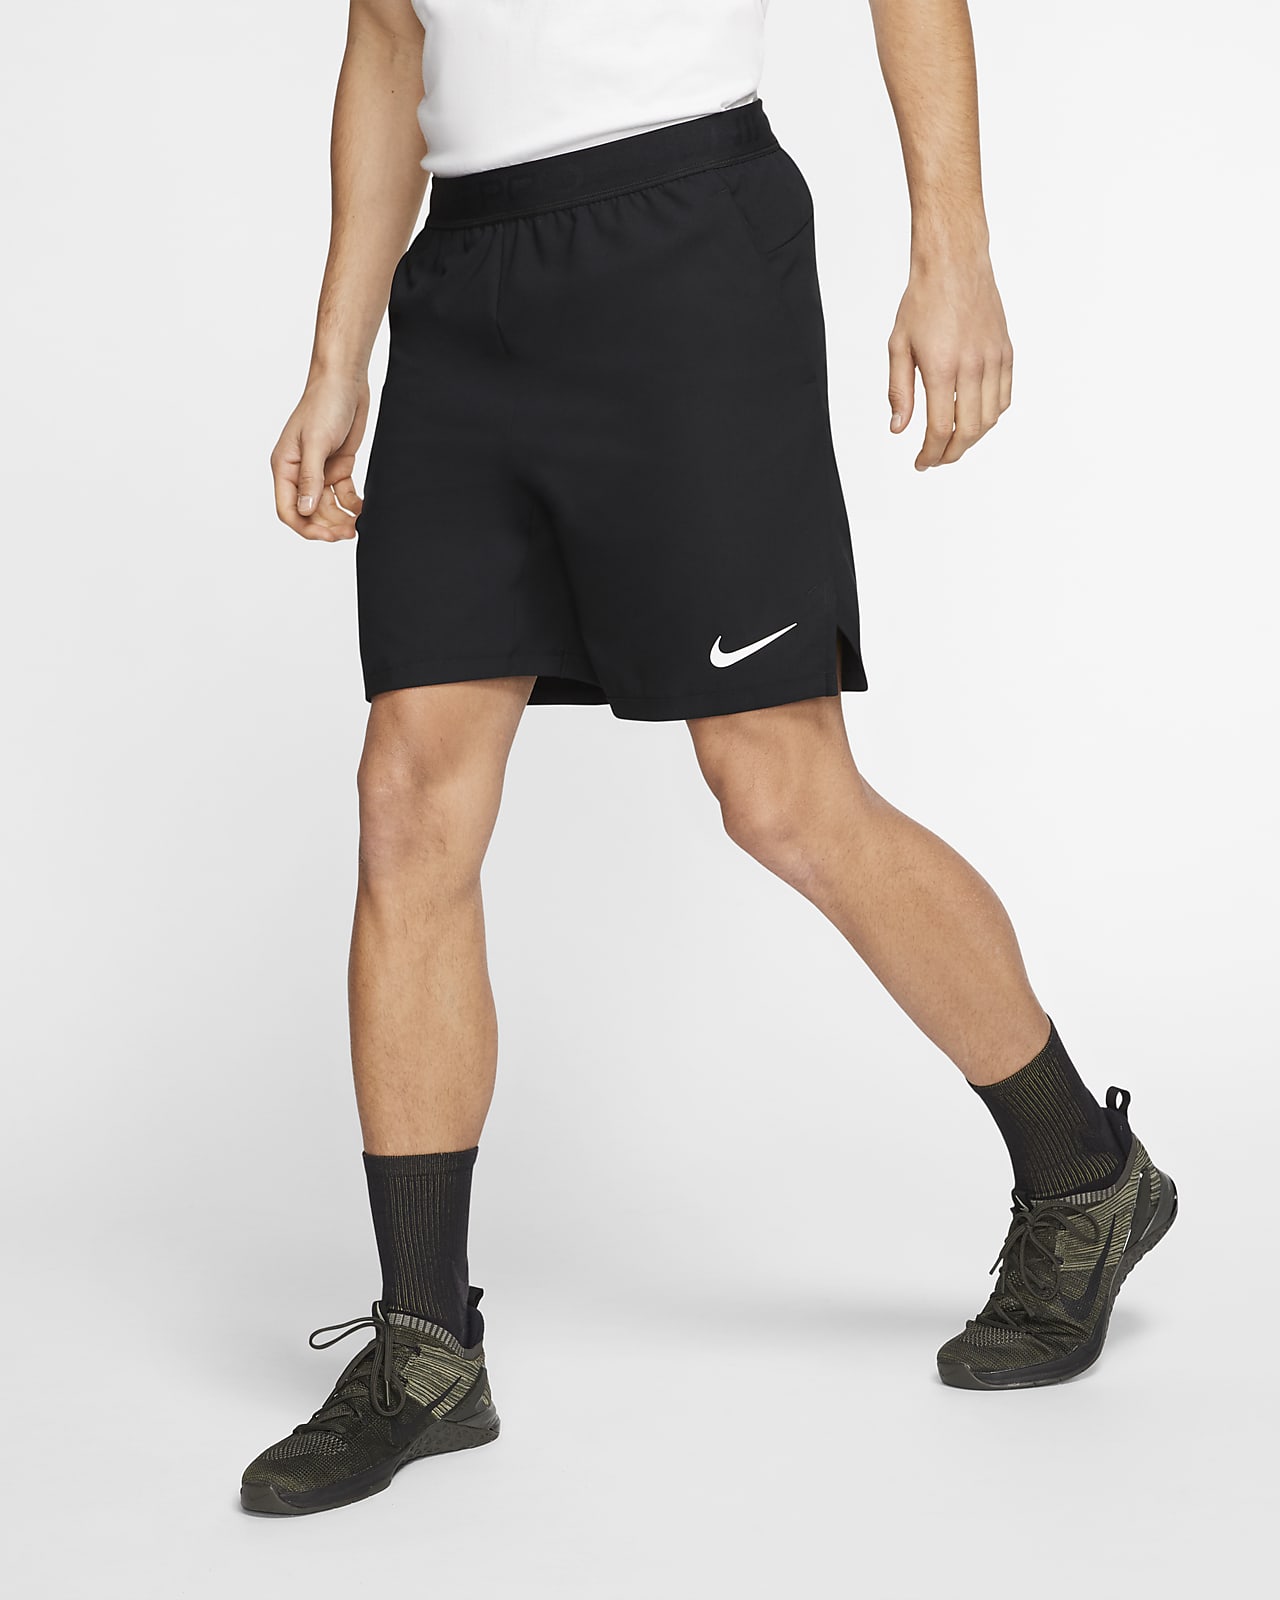 Nike Vent Max corto - Hombre. Nike ES